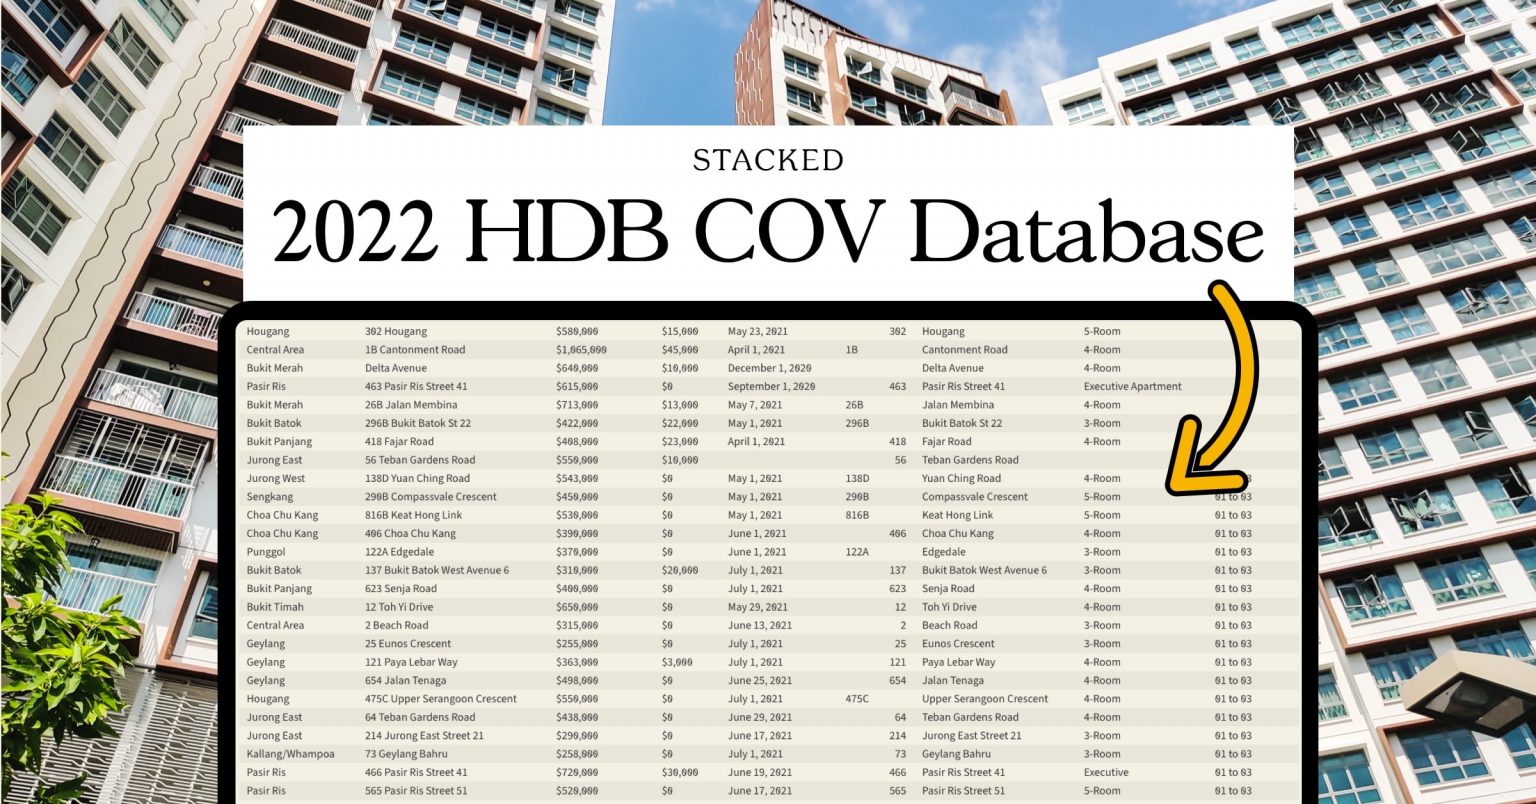 HDB COV Database Featured